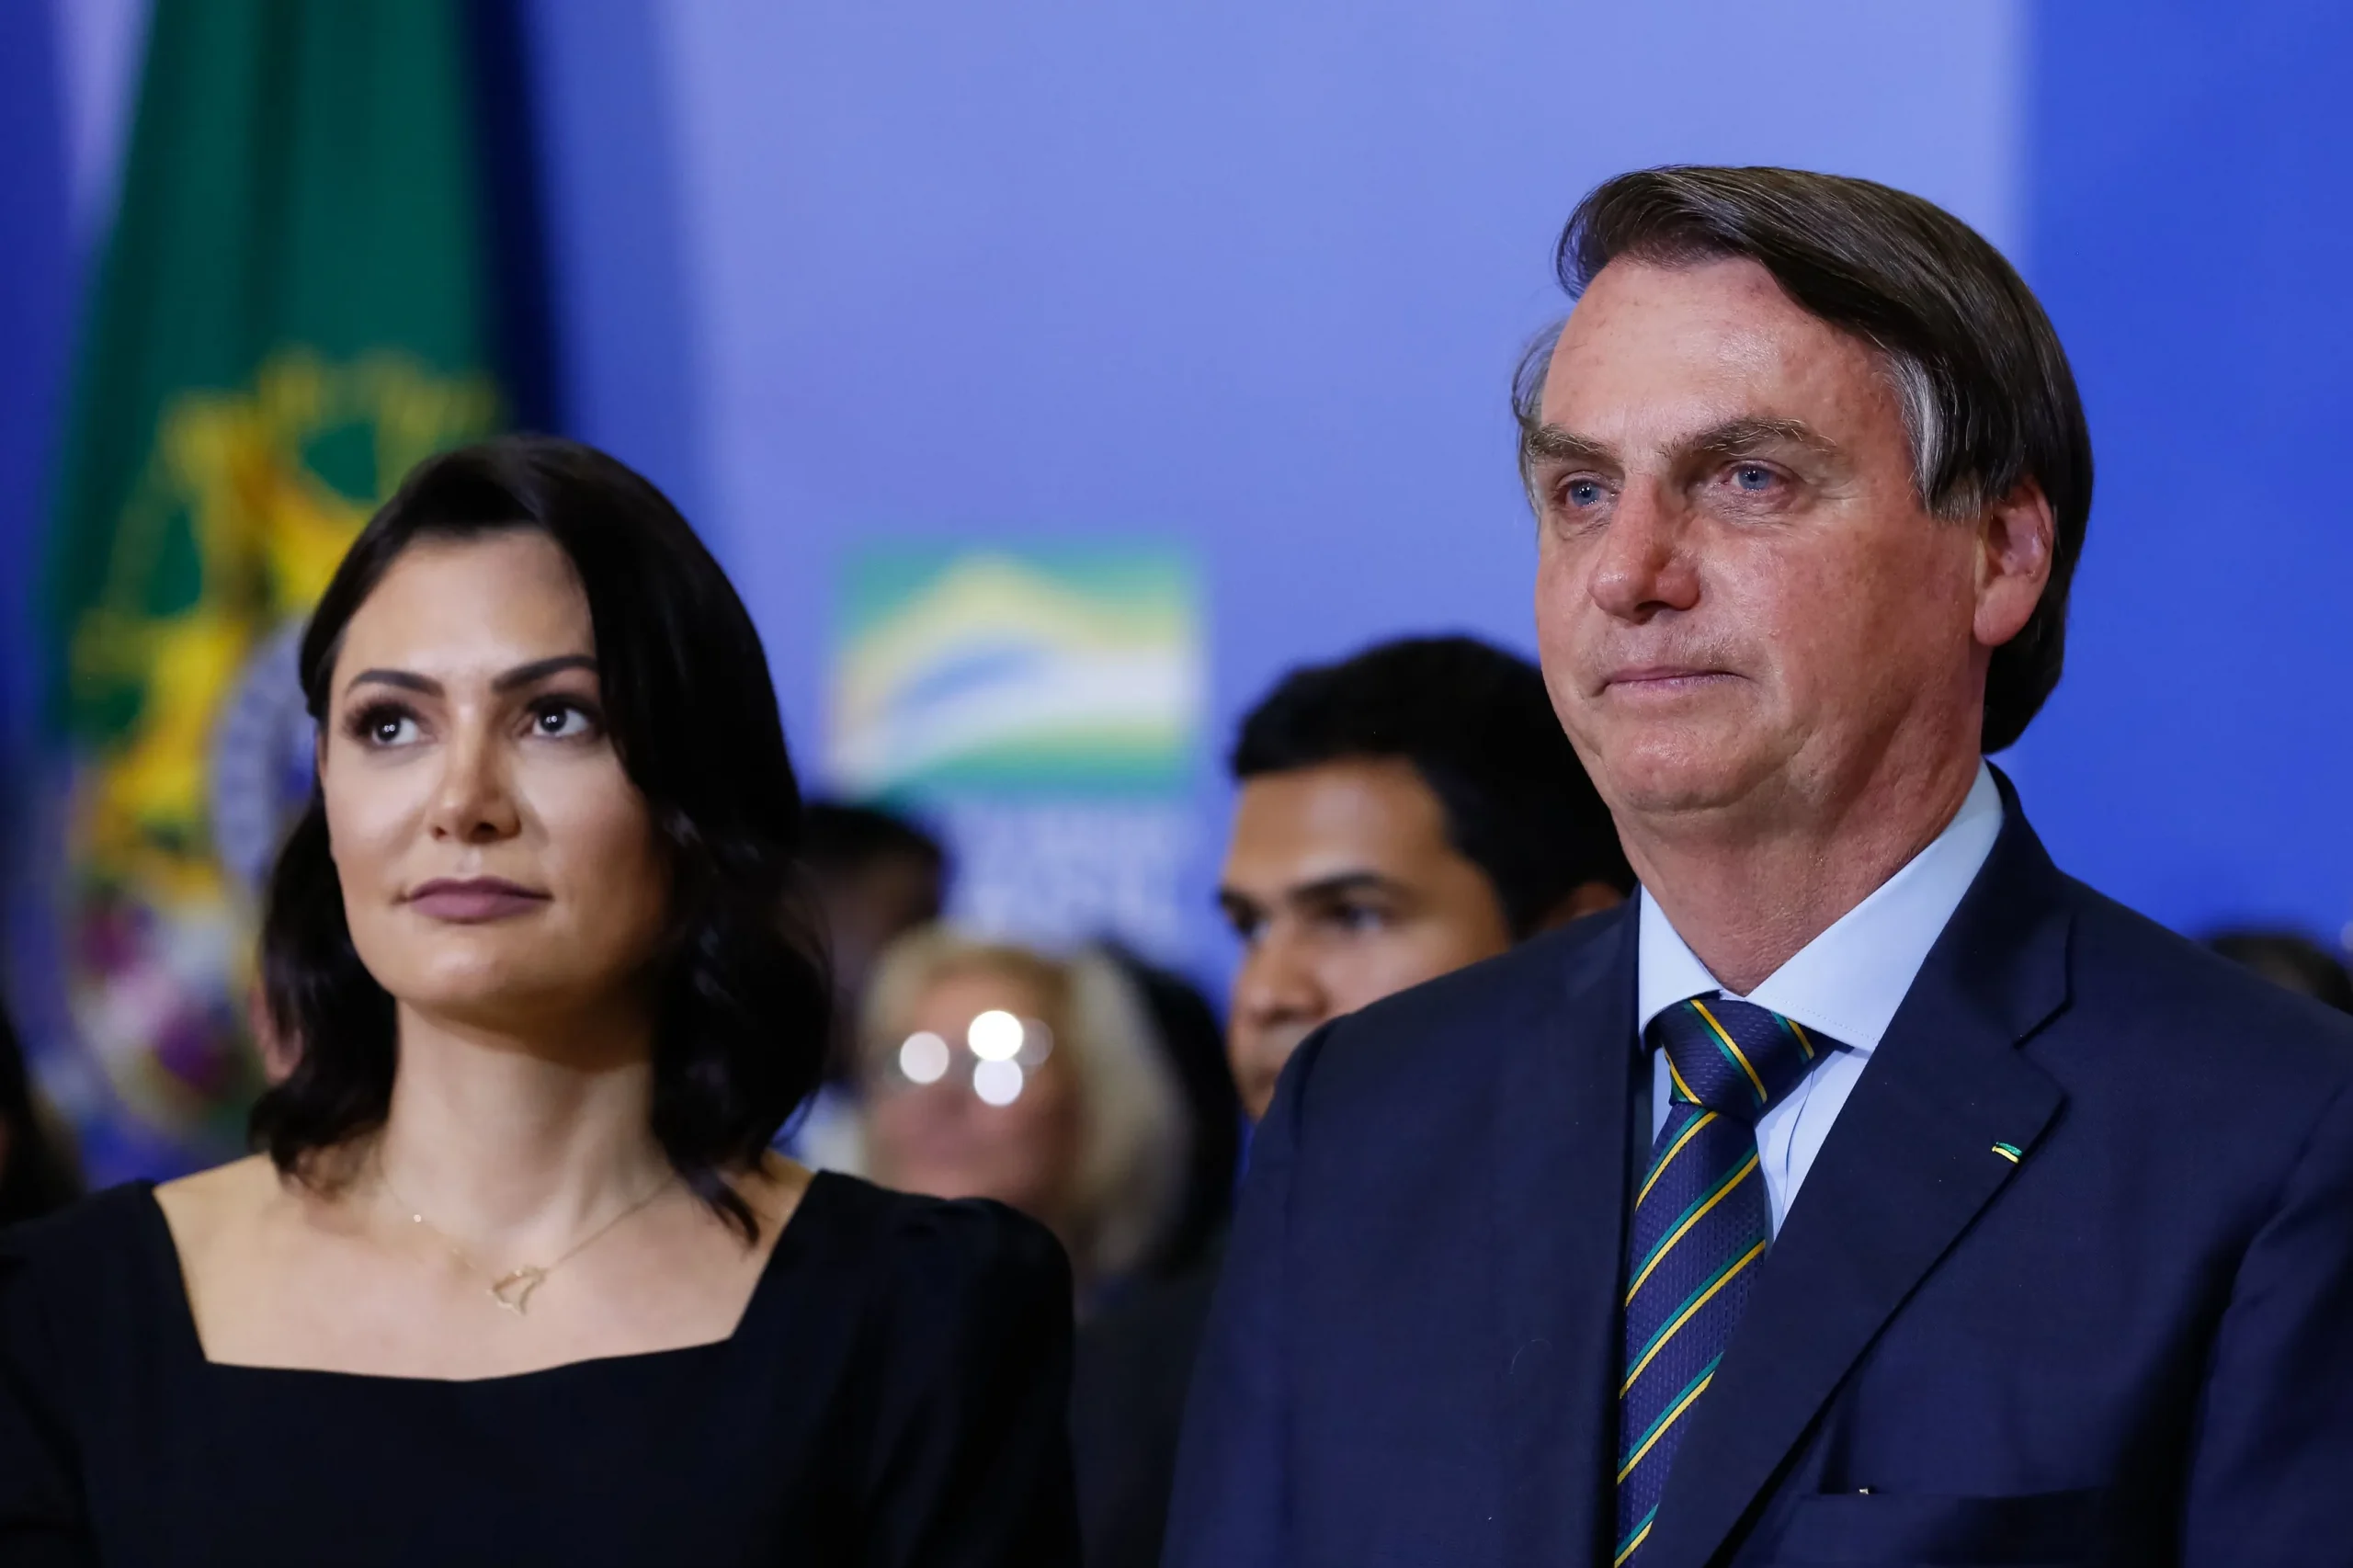 Michelle cancela viagem a Aracaju, nesta sexta-feira (26), por motivos de saúde, mas presença de Bolsonaro está mantida